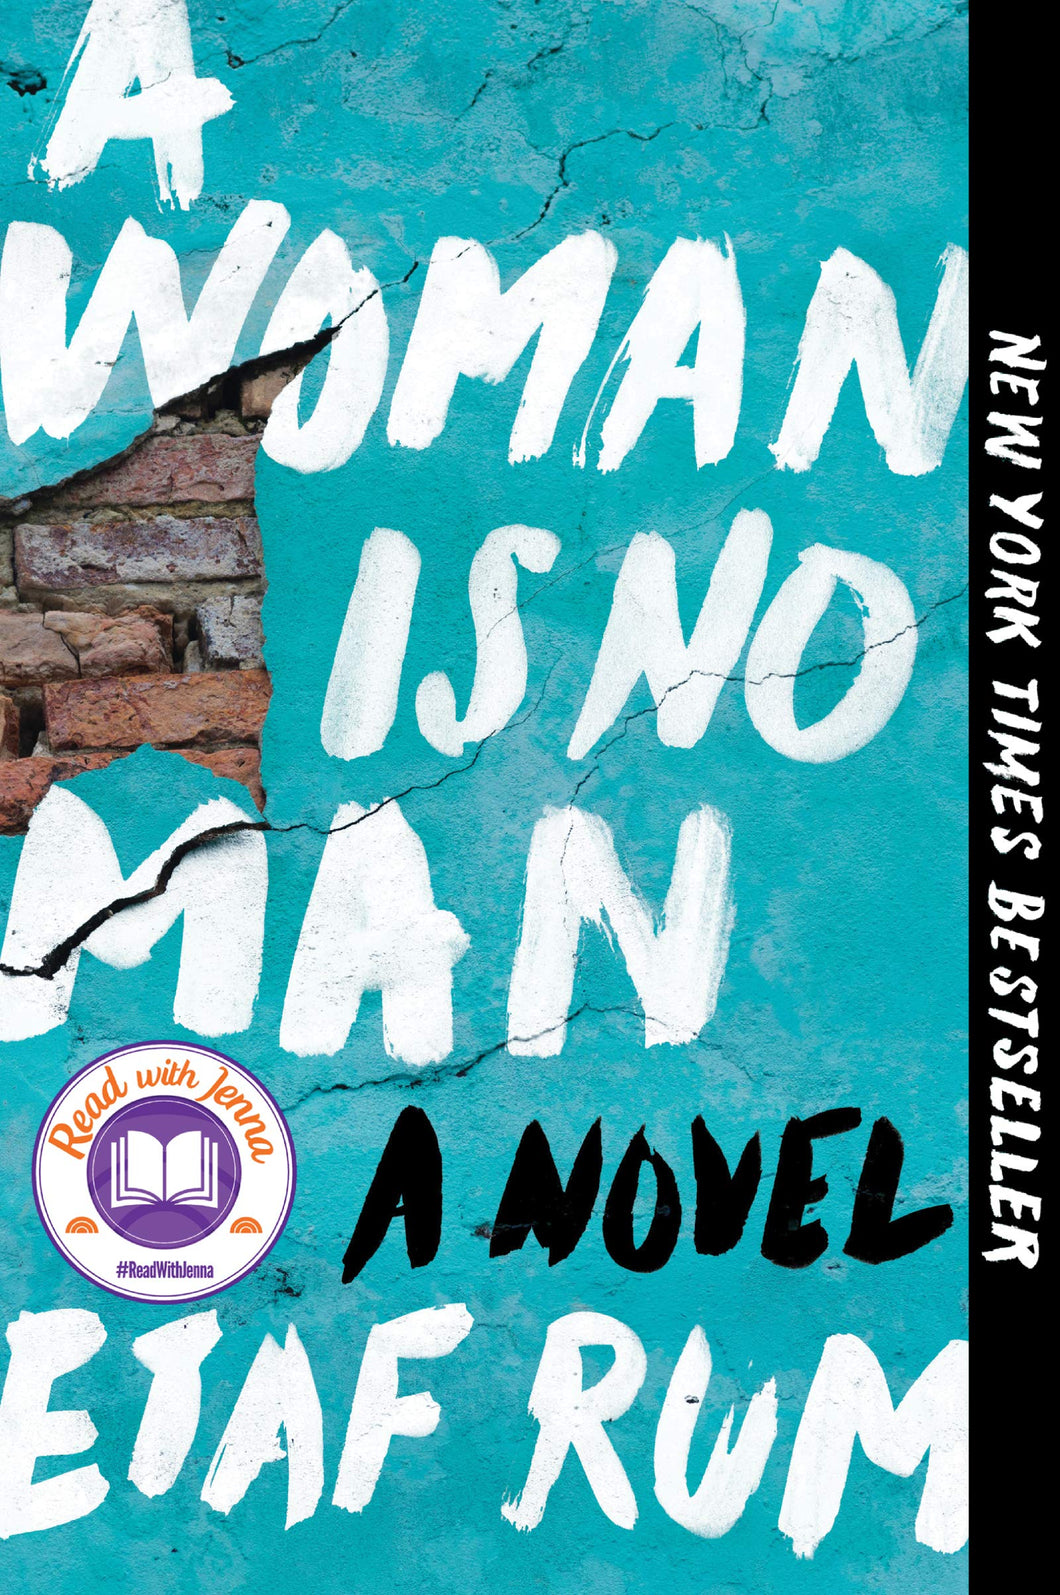 A Woman Is No Man: A Novel